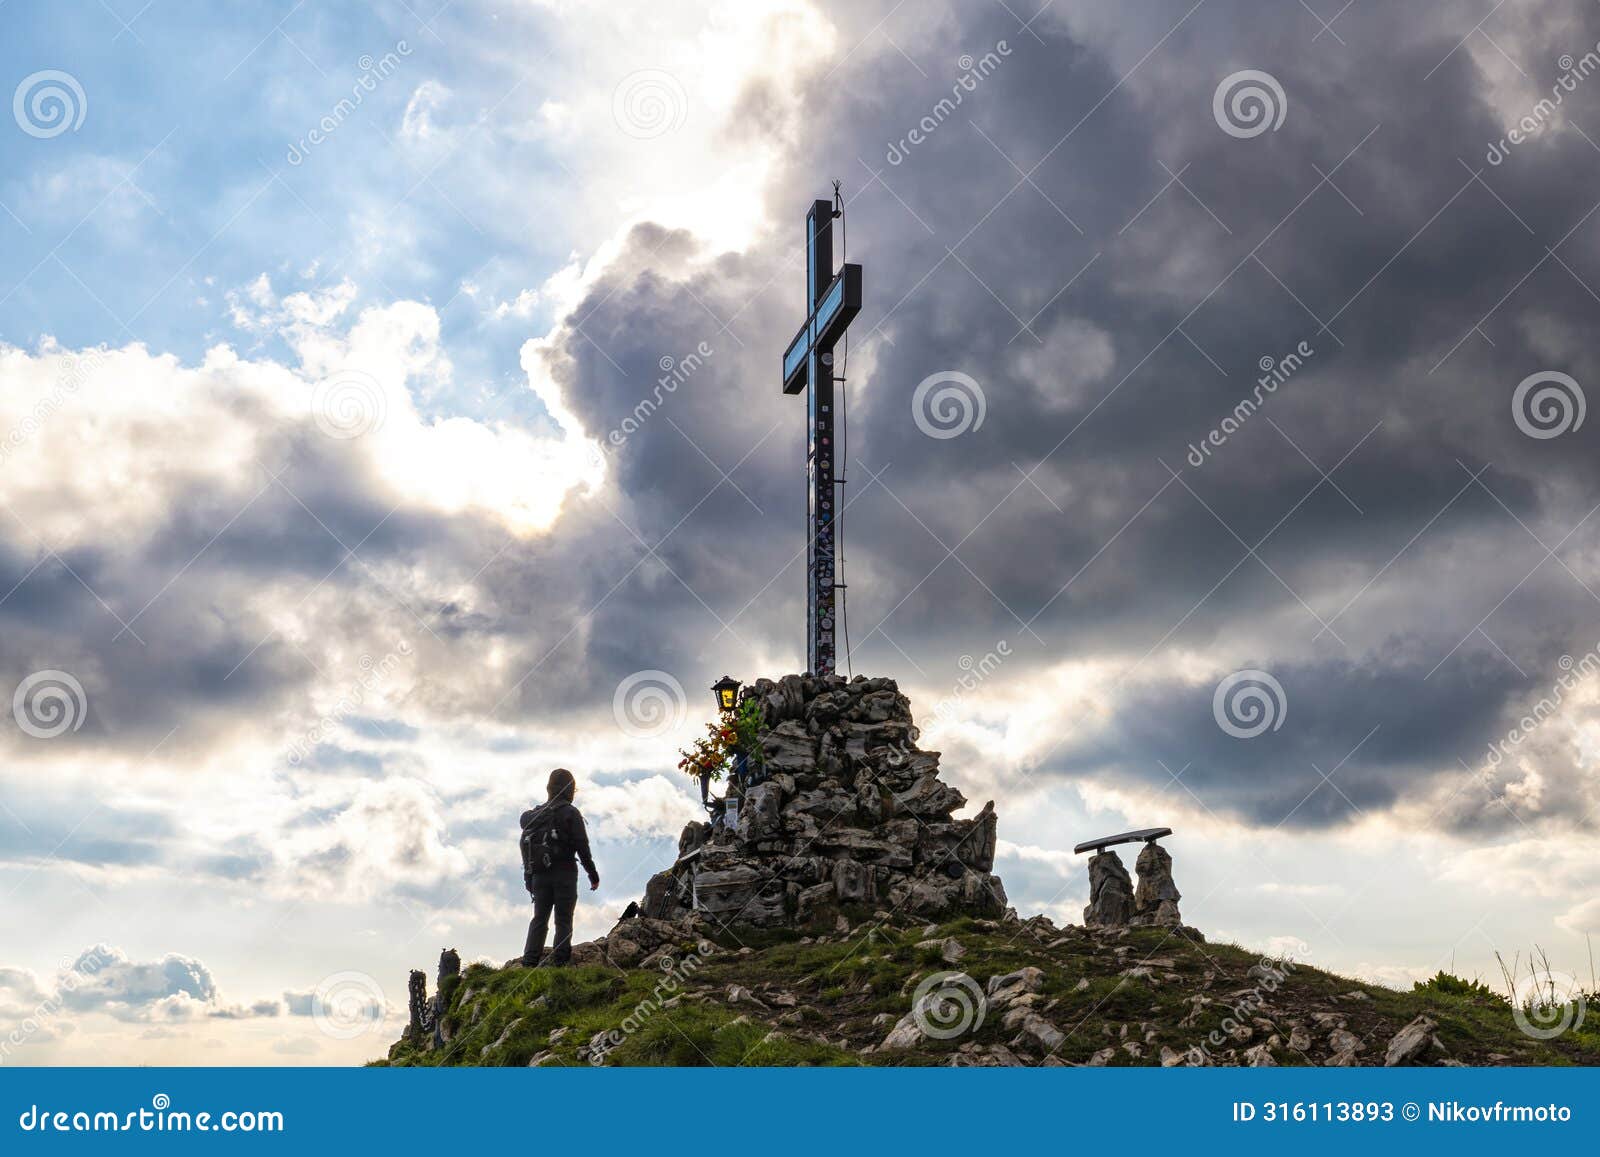 peak cross on mount bolettone in lombardy